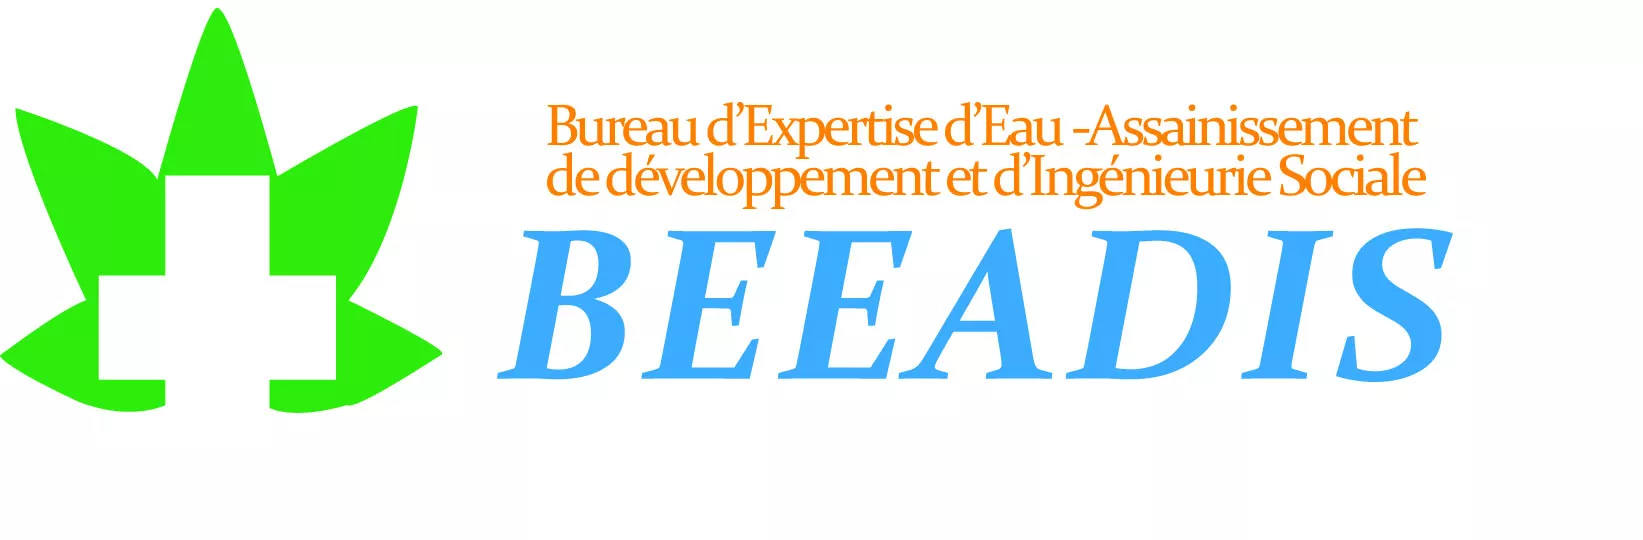 Le Bureau d’Expertise d’Eau–Assainissement de Développement et Ingénierie Social (BEEADIS) recrute pour plusieurs profils à Koundoul